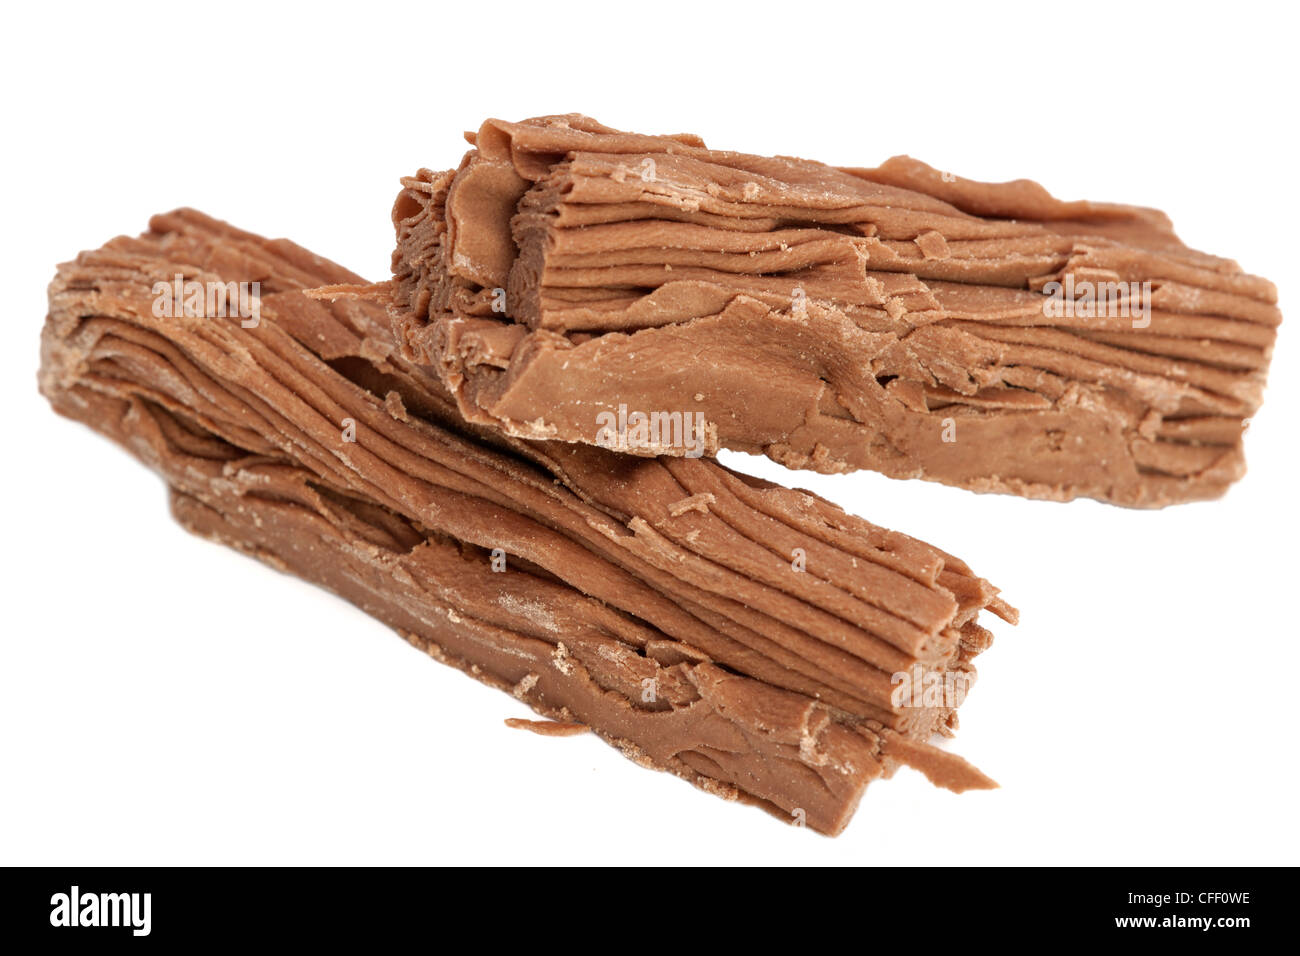 Cadbury ricoperta di cioccolato in fiocchi spezzato in due metà Foto Stock